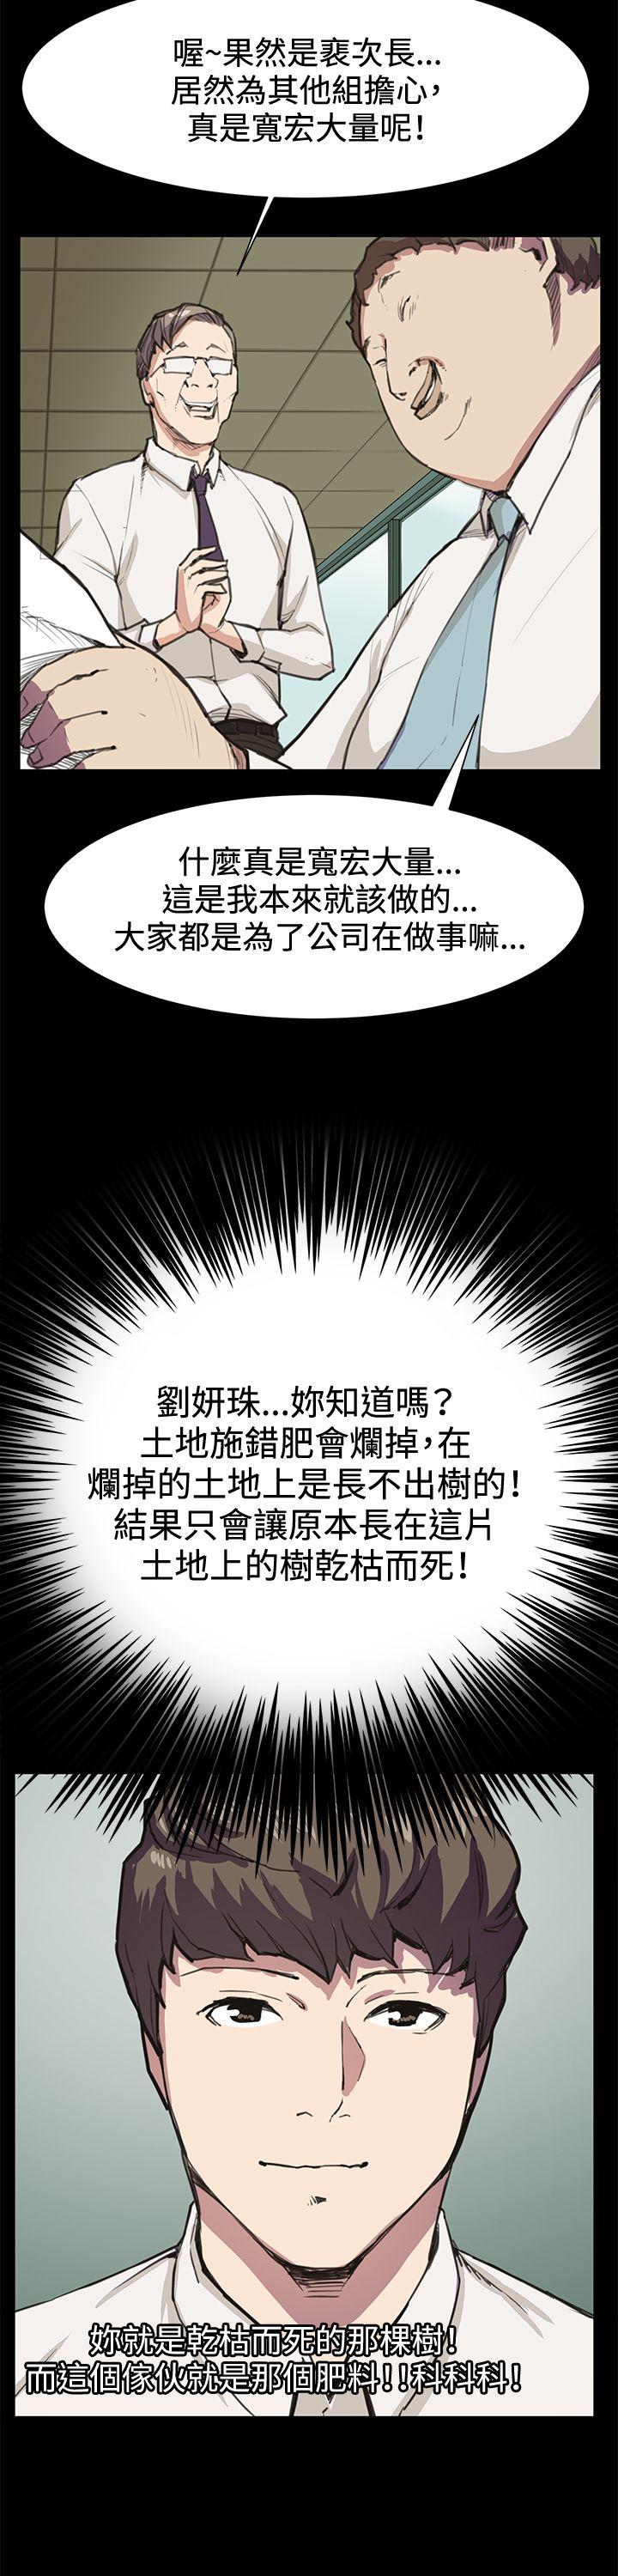 韩国污漫画 深夜便利店 第15话 14